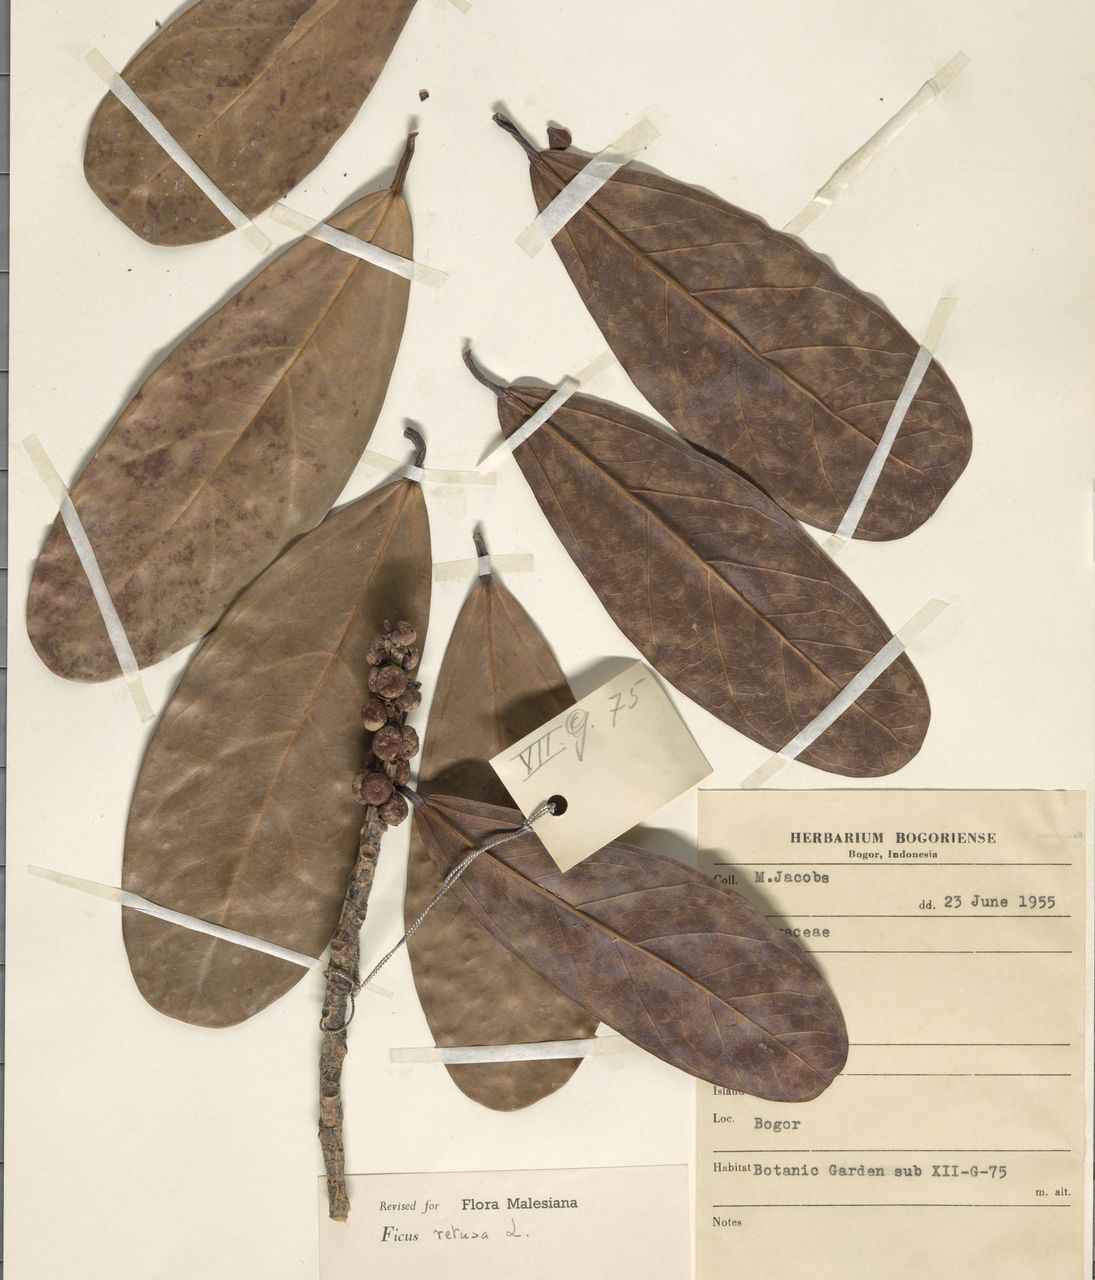 Figure of Ficus retusa at the Herbarium Bogoriense